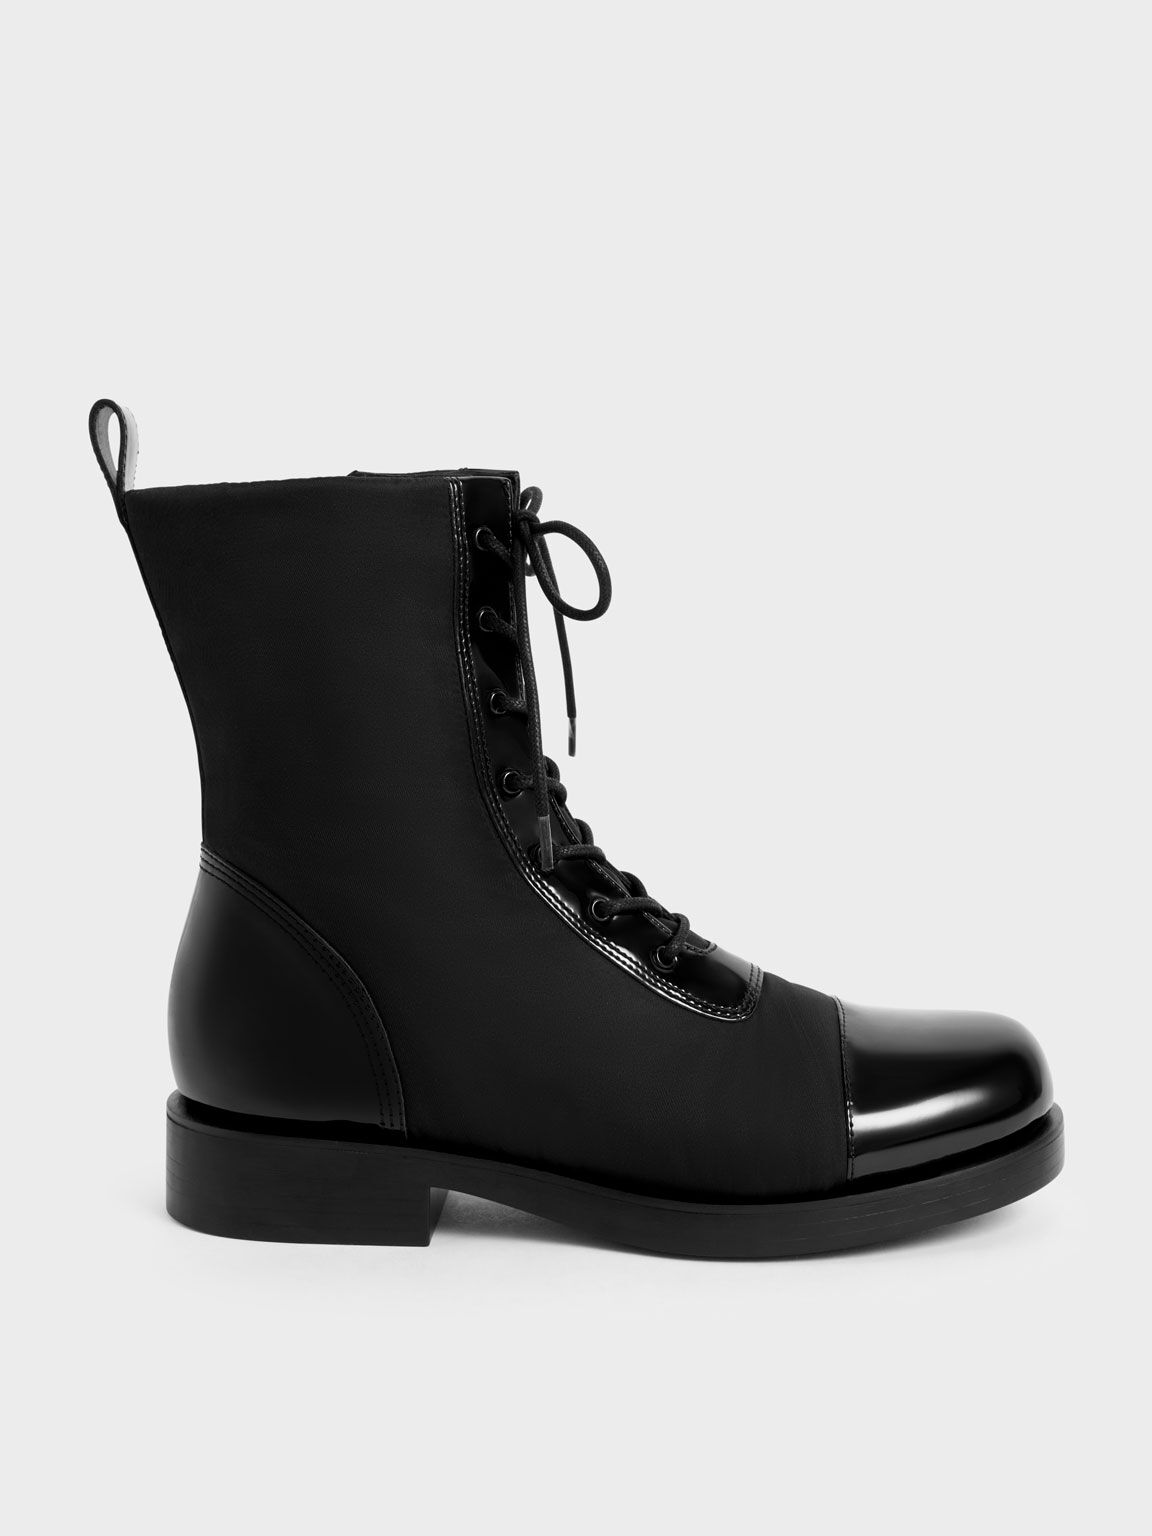 Nylon & Patent Combat Boots, Black, hi-res